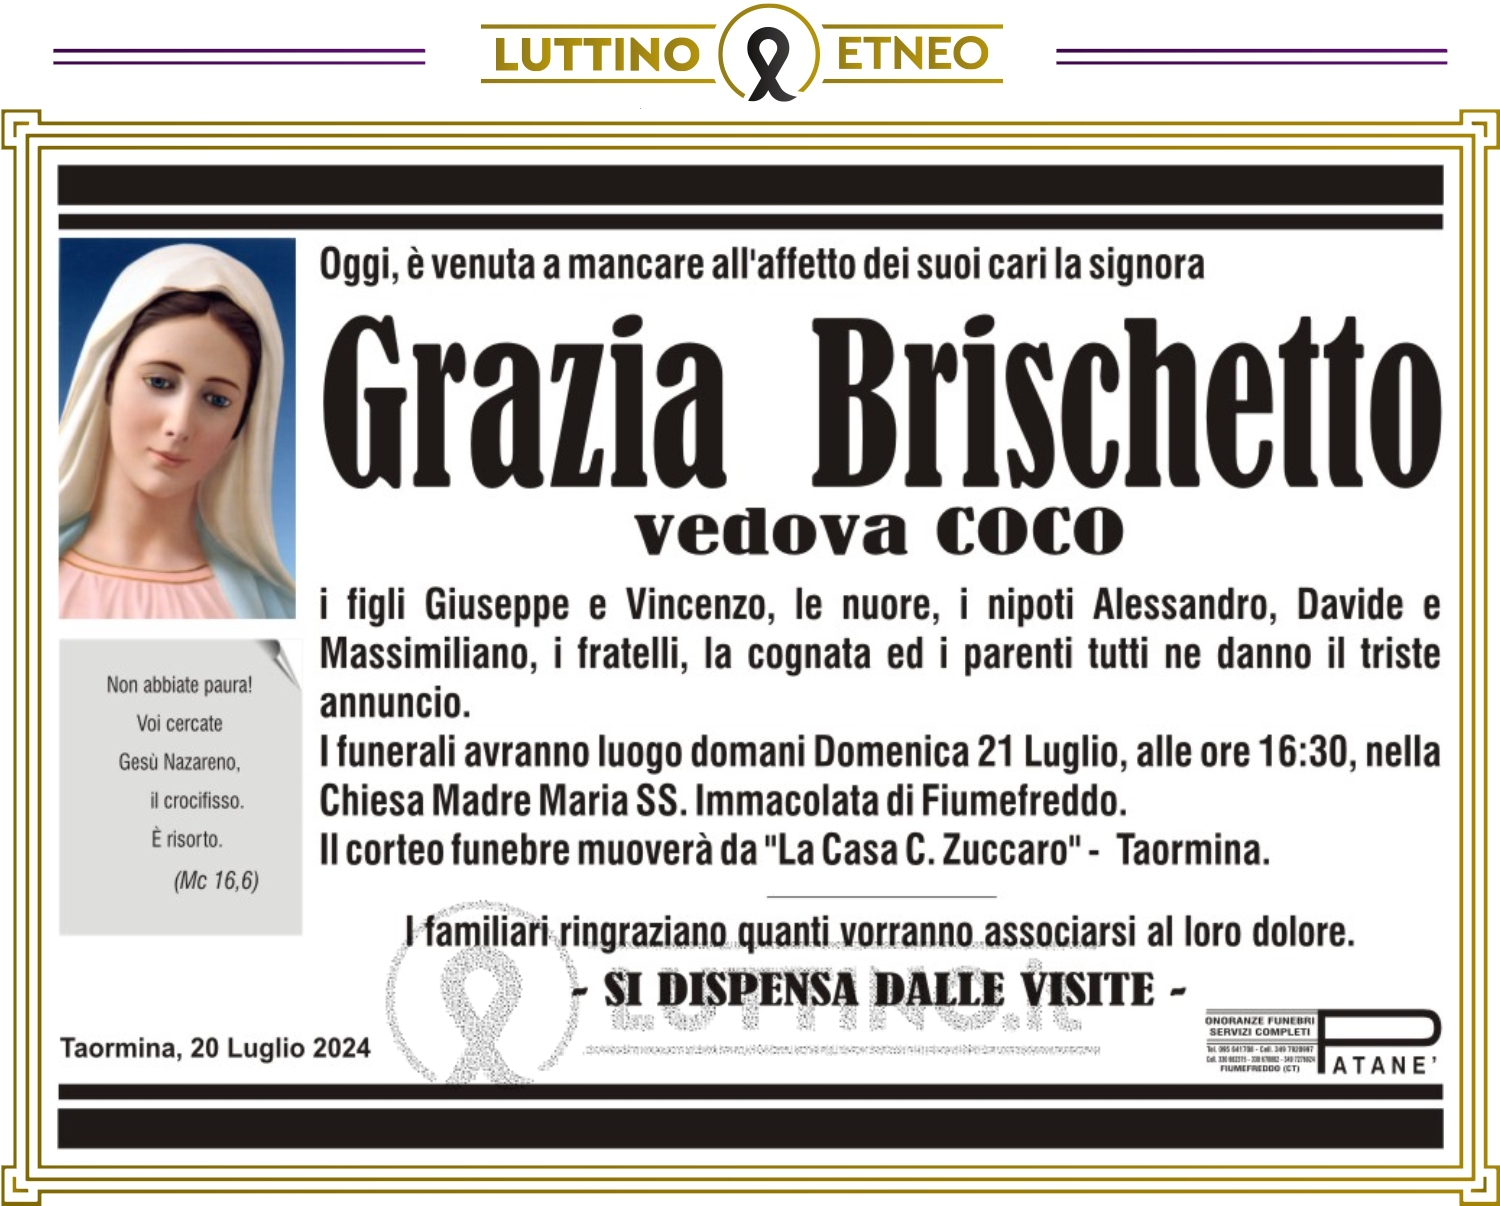 Grazia Brischetto